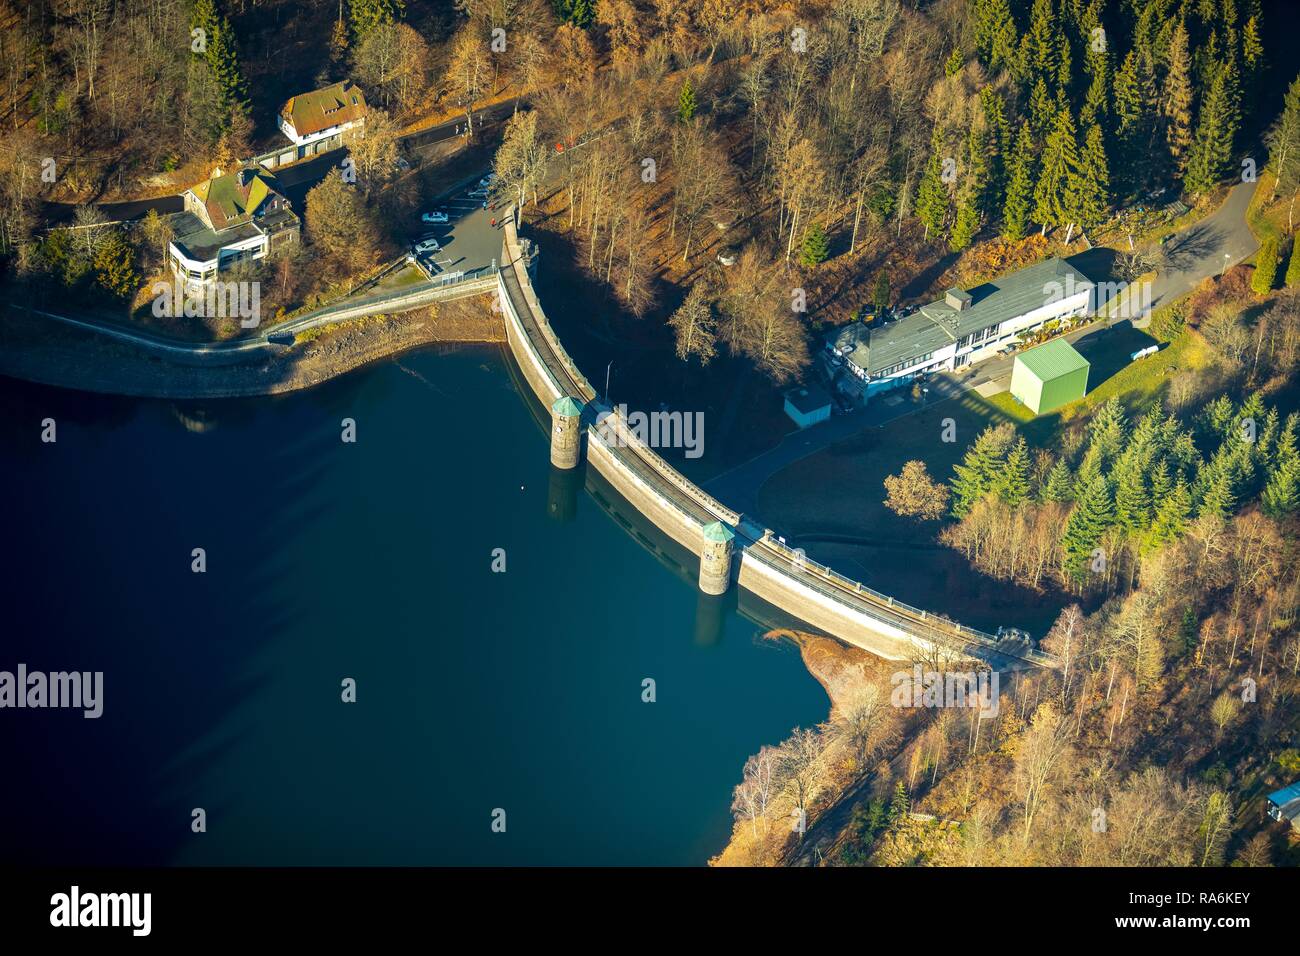 Vista aérea, presa, Fürwiggetalsperre, Meinerzhagen, Sauerland, dam, Renania del Norte-Westfalia, Alemania Foto de stock